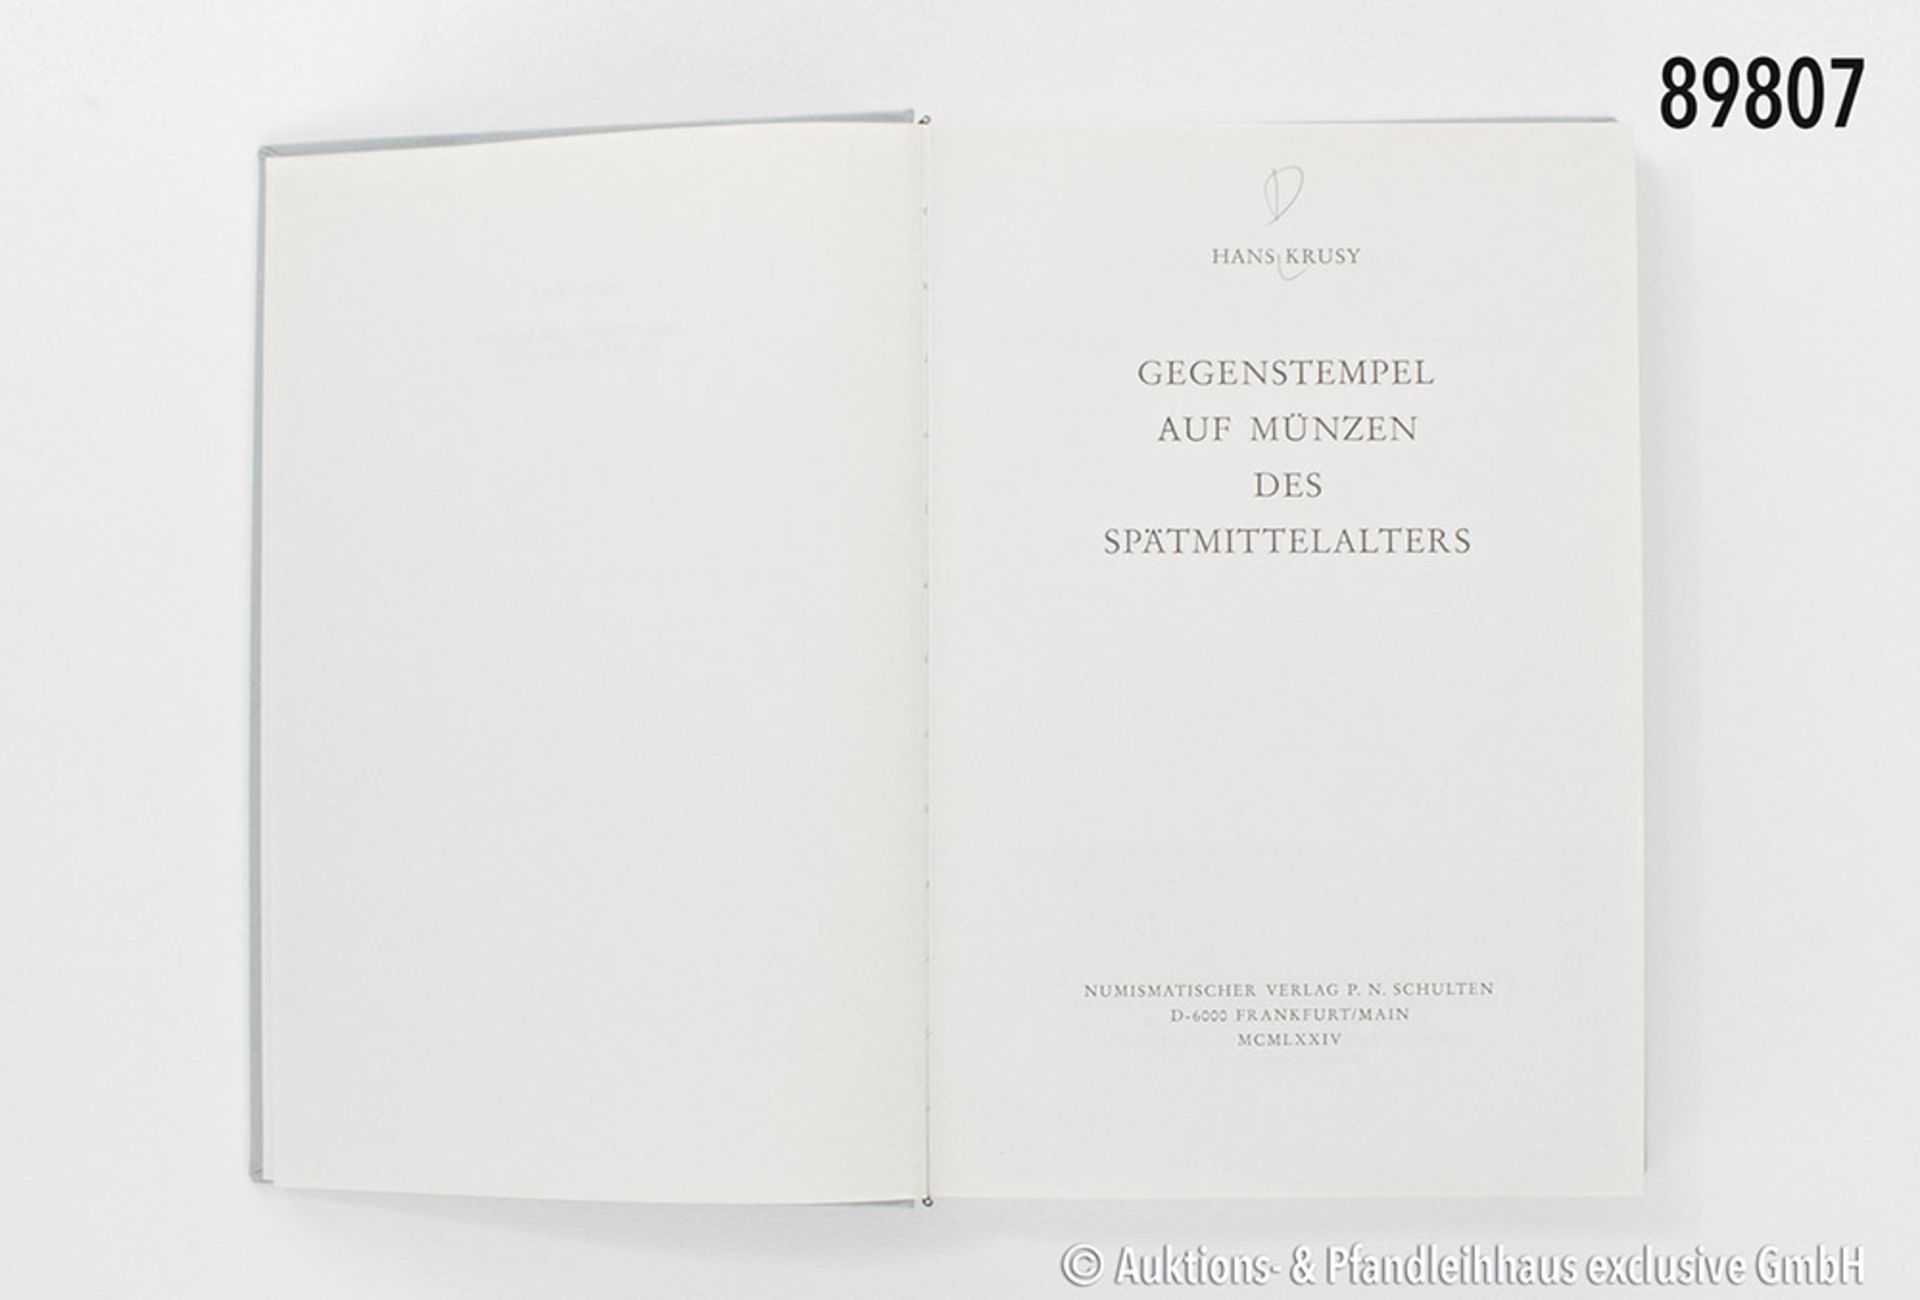 H. Krusy, Gegenstempel auf Münzen des Spätmittelalters, Numismatischer Verlag P. N. Schulten,